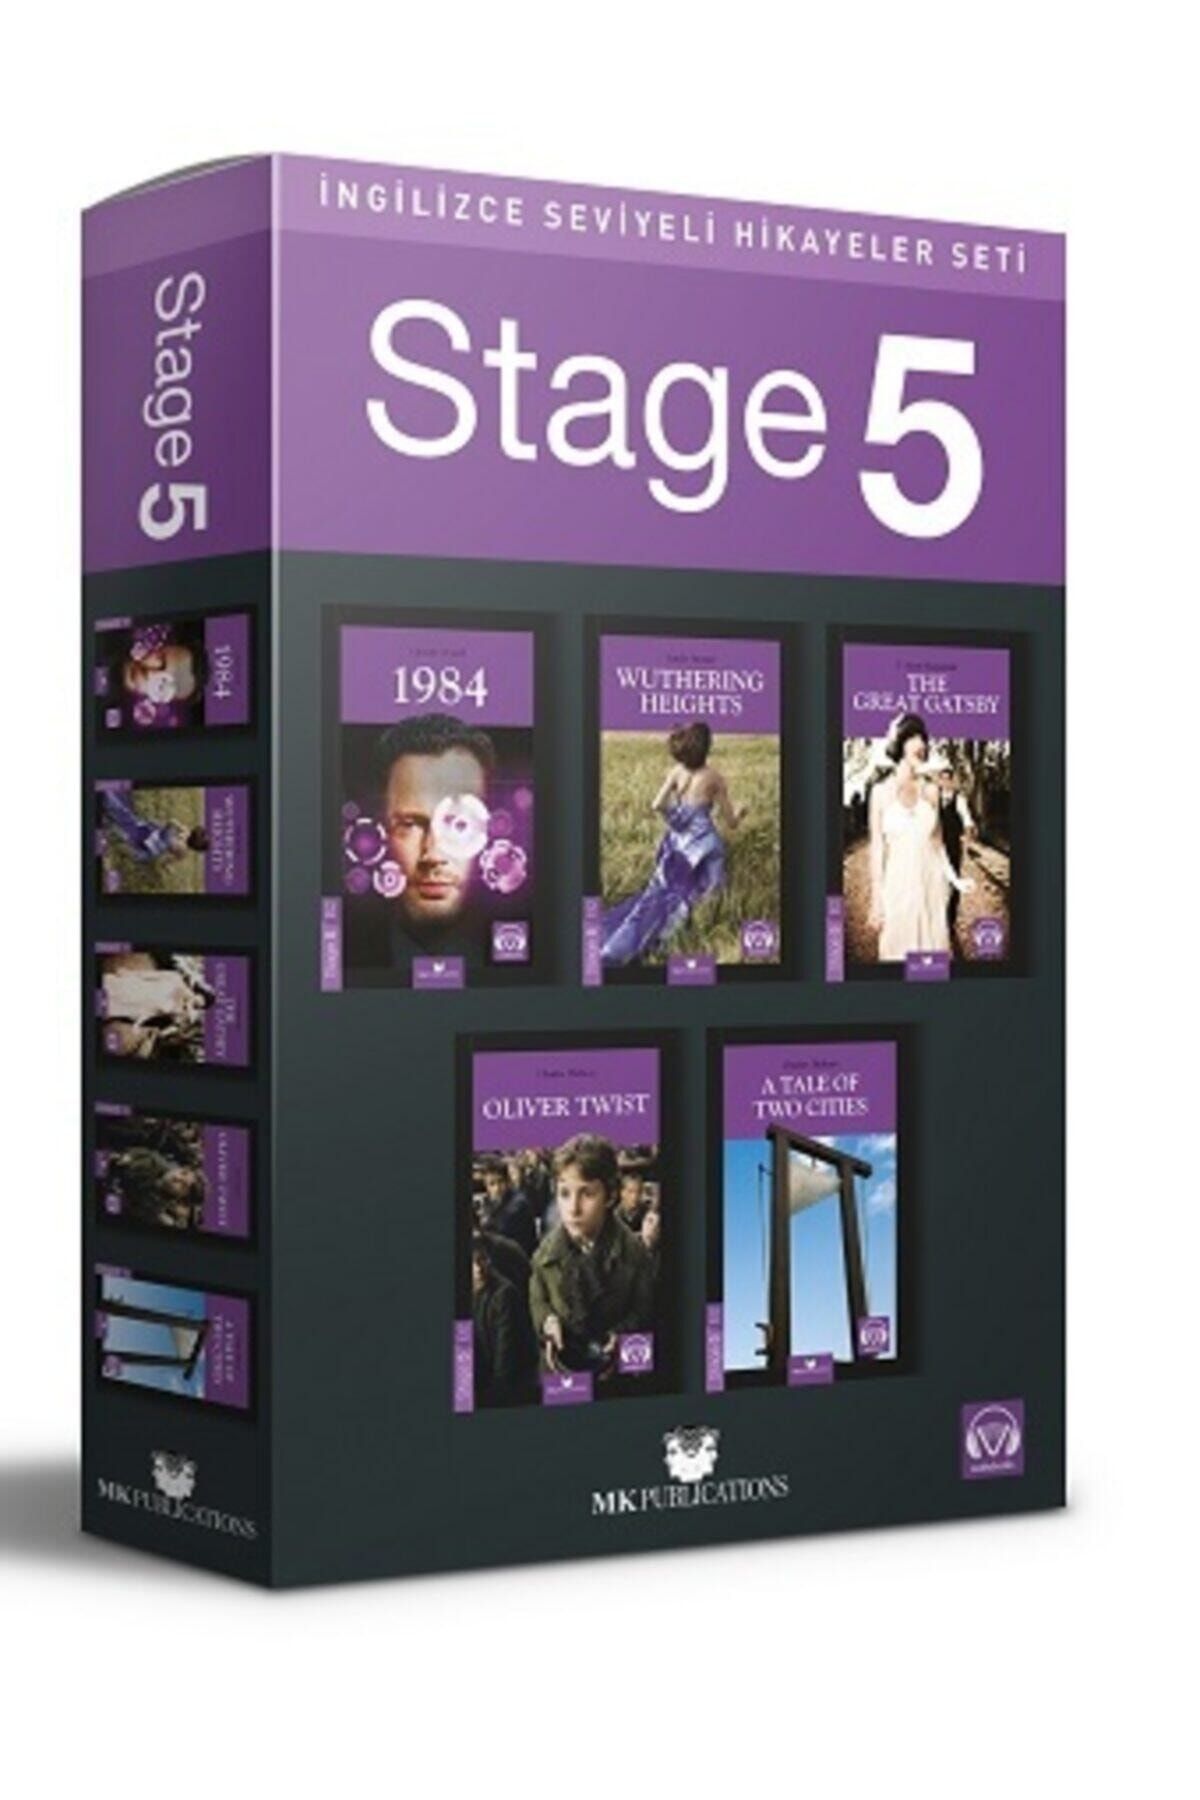 MK Publications Ingilizce Hikaye Seti Stage 5 Kutulu Set 5 Kitap Ve Ses Dosyaları Kelime Kartı